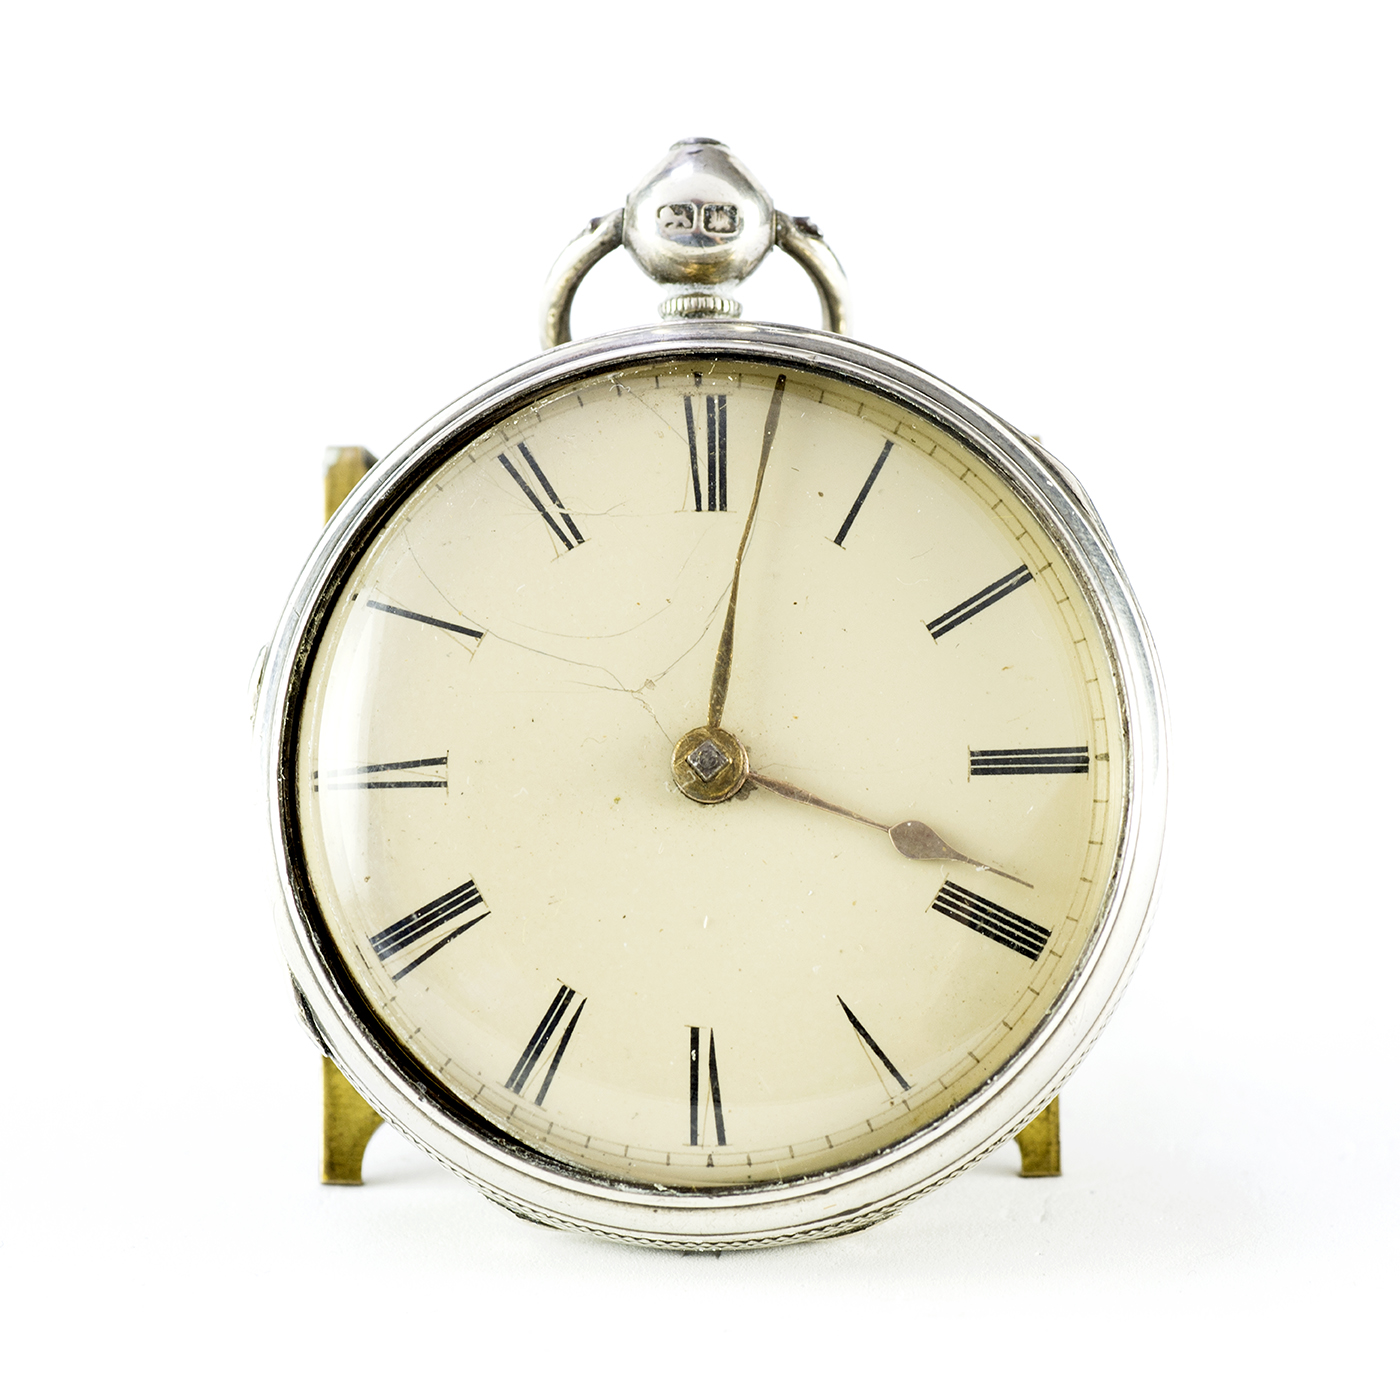 Reloj de bolsillo Inglés, Lepine, Verge Fusee (catalino). Birmingham, 1836.